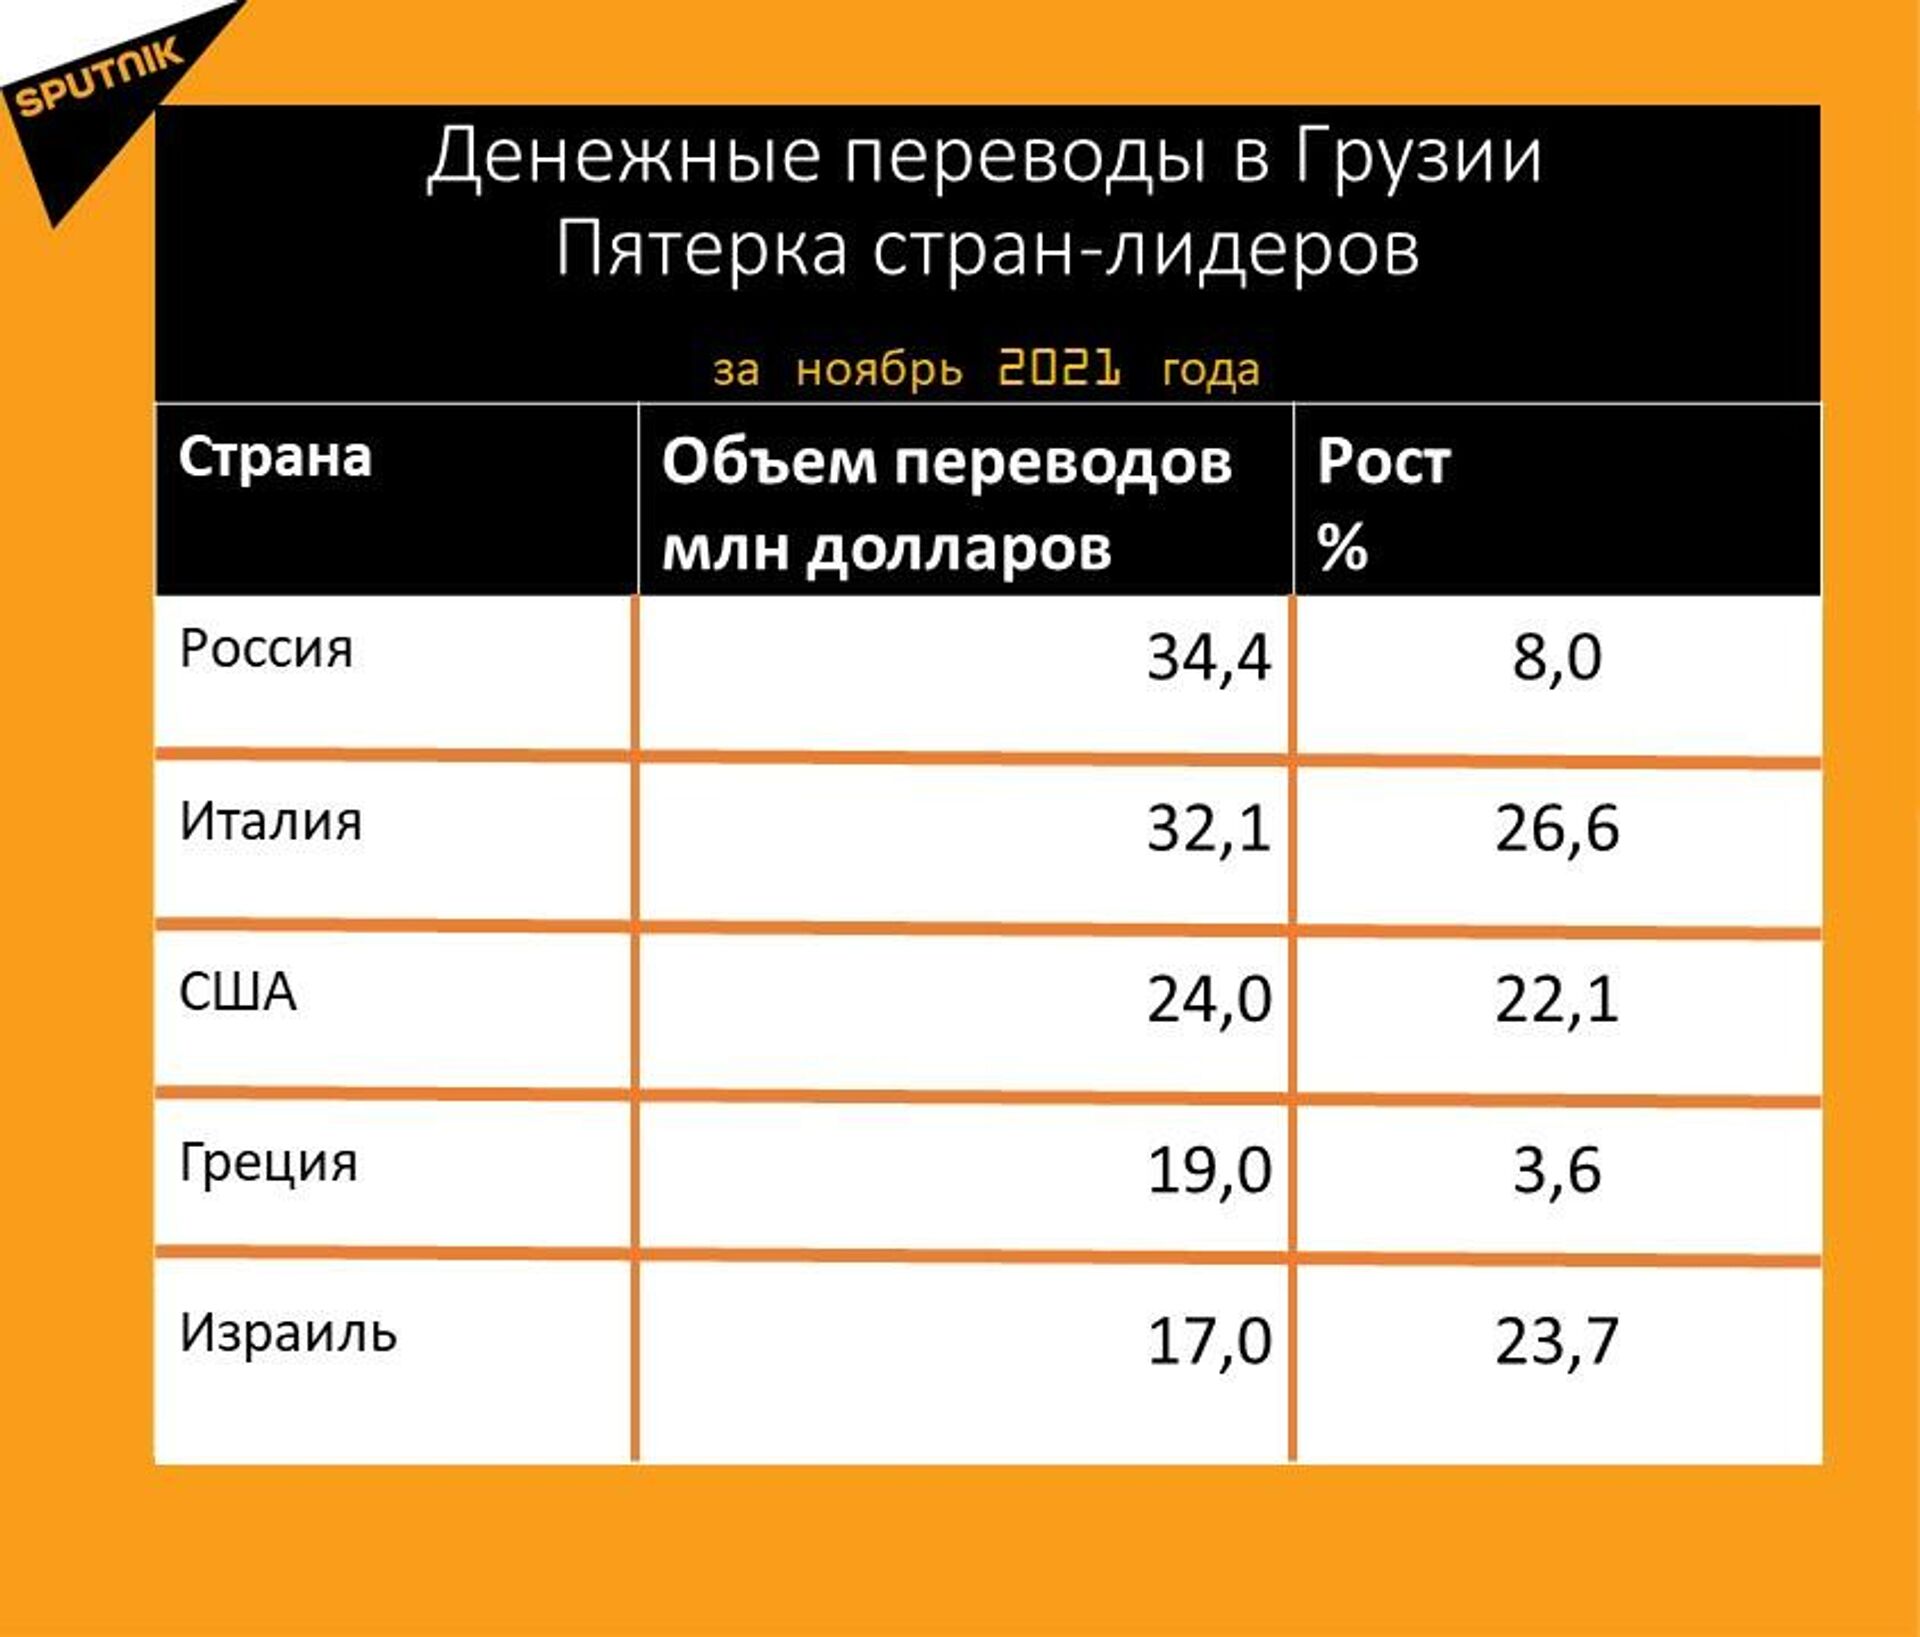 Статистика денежных переводов в Грузию за ноябрь 2021 года - Sputnik Грузия, 1920, 16.12.2021